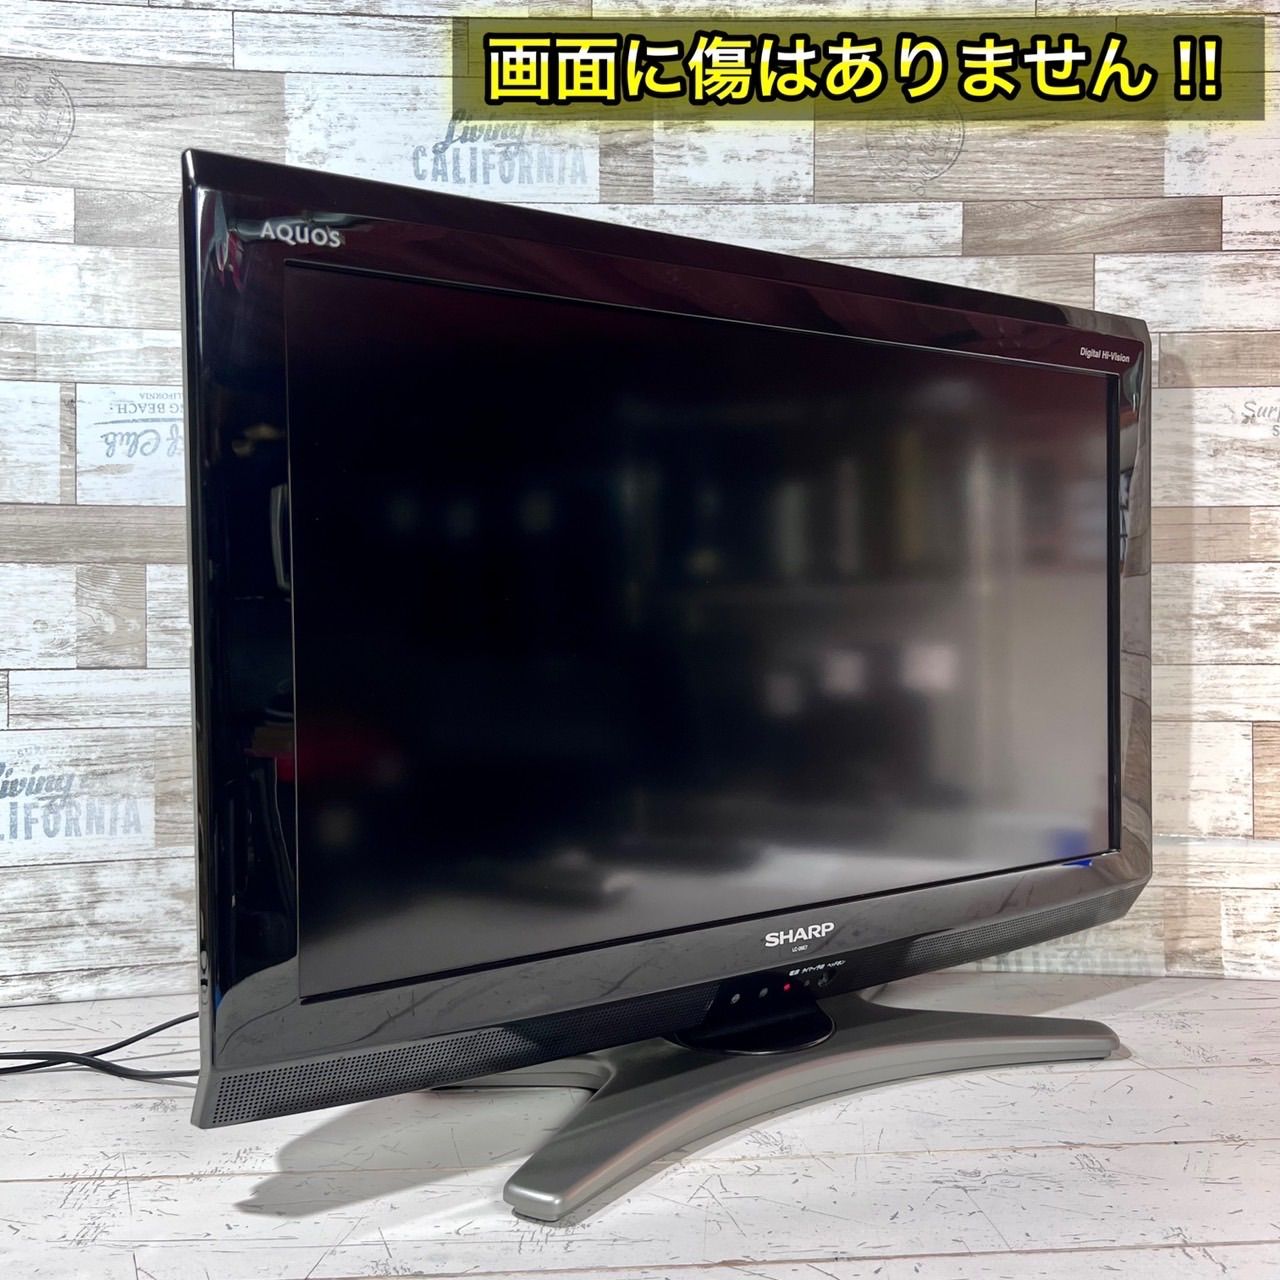 売れ筋新商品 SHARP AQUOS 液晶テレビ 26型✨ PC入力可能⭕️ sushitai